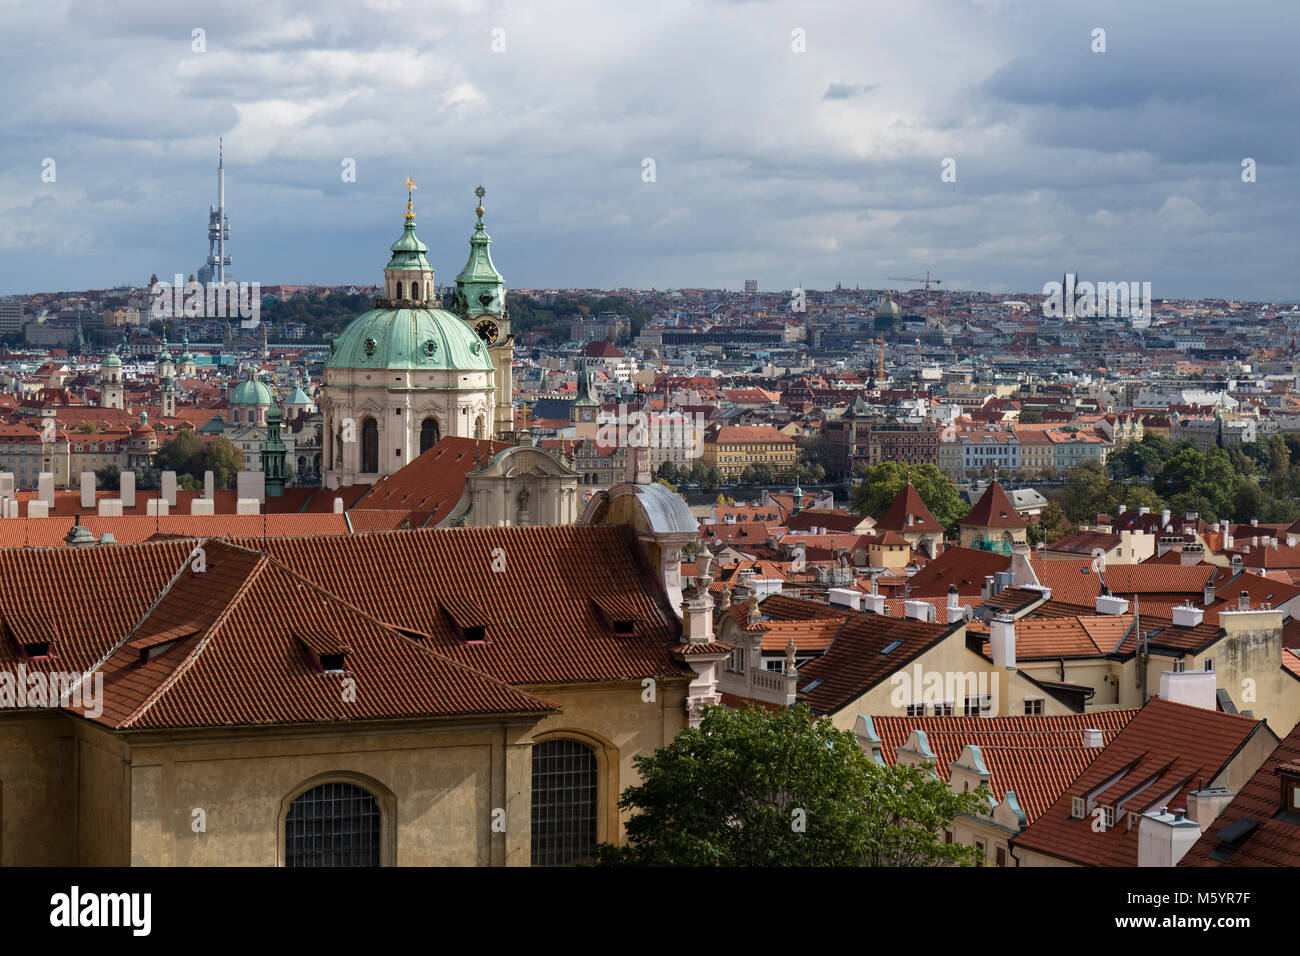 Prag, Tschechische Republik - Oktober 6, 2017: Prag mit dem reich verzierten Kuppel der St.-Nikolaus-Kirche auf der Kleinseite und einen Blick über die Stadt. Stockfoto